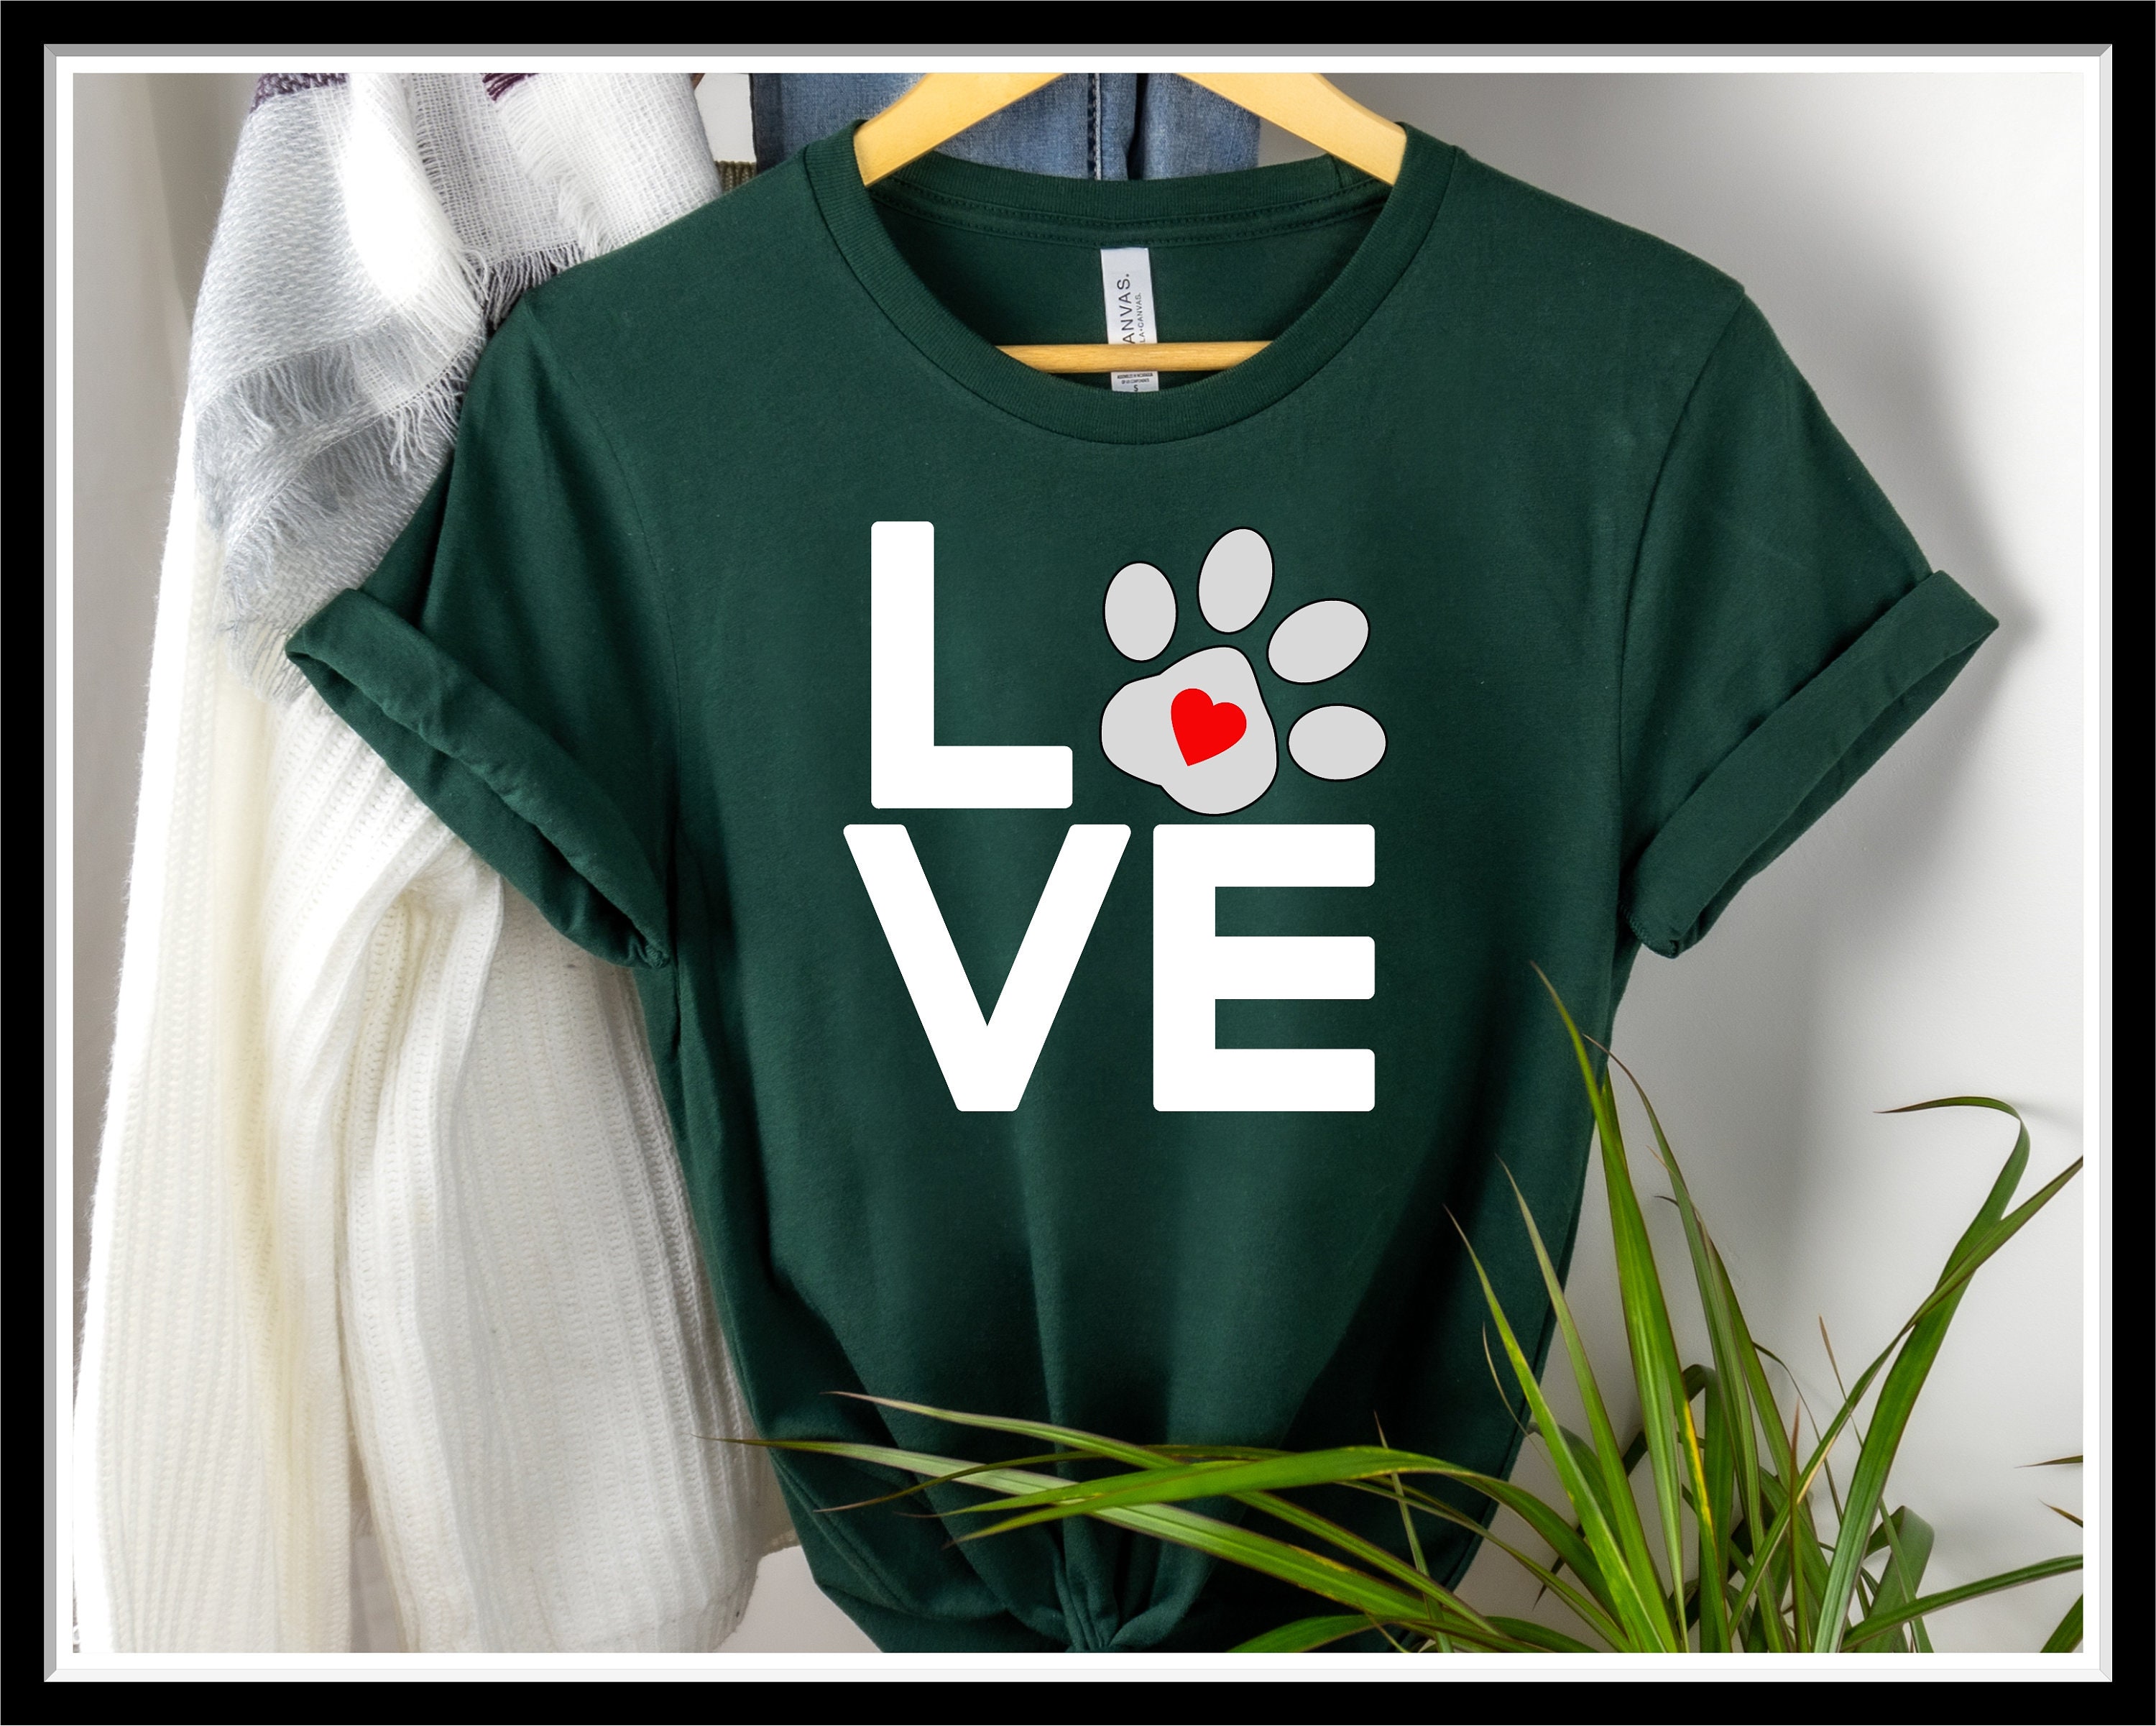 Love PawPrint T Shirt Love My Dog TShirt Dog Paw Print | Etsy